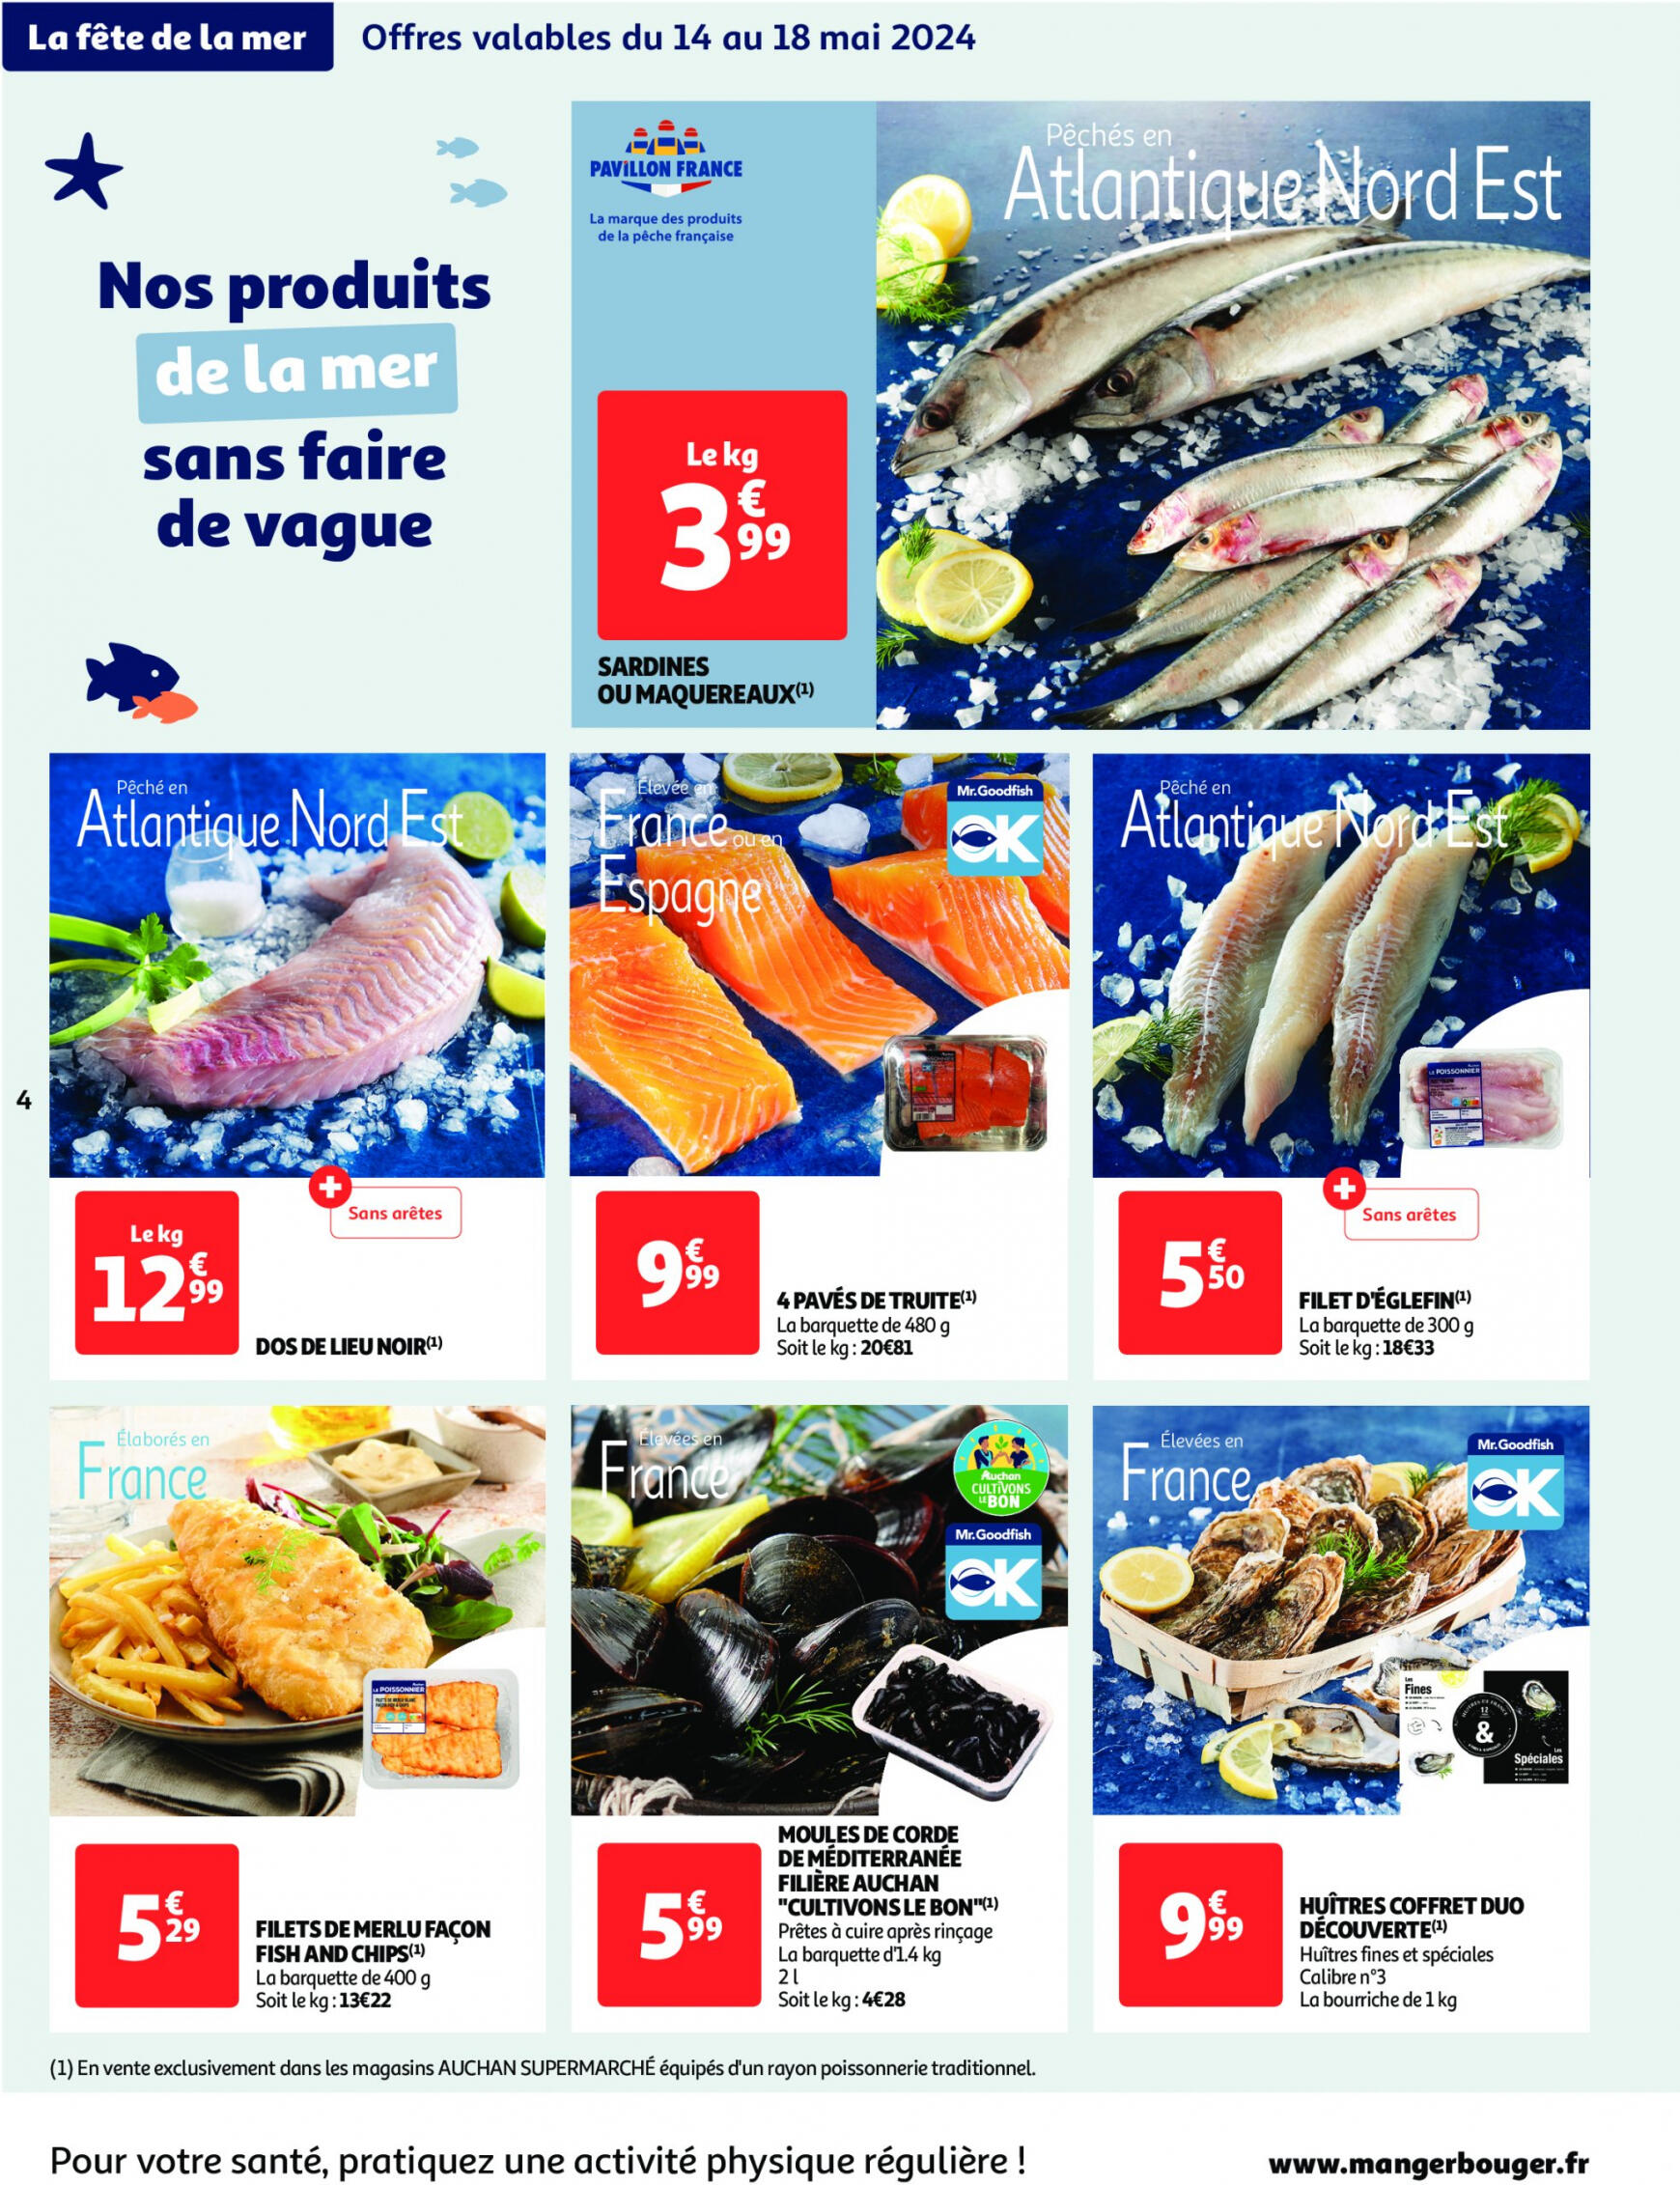 auchan - Auchan - On met le turbot sur les produits de la mer folder huidig 14.05. - 19.05. - page: 4